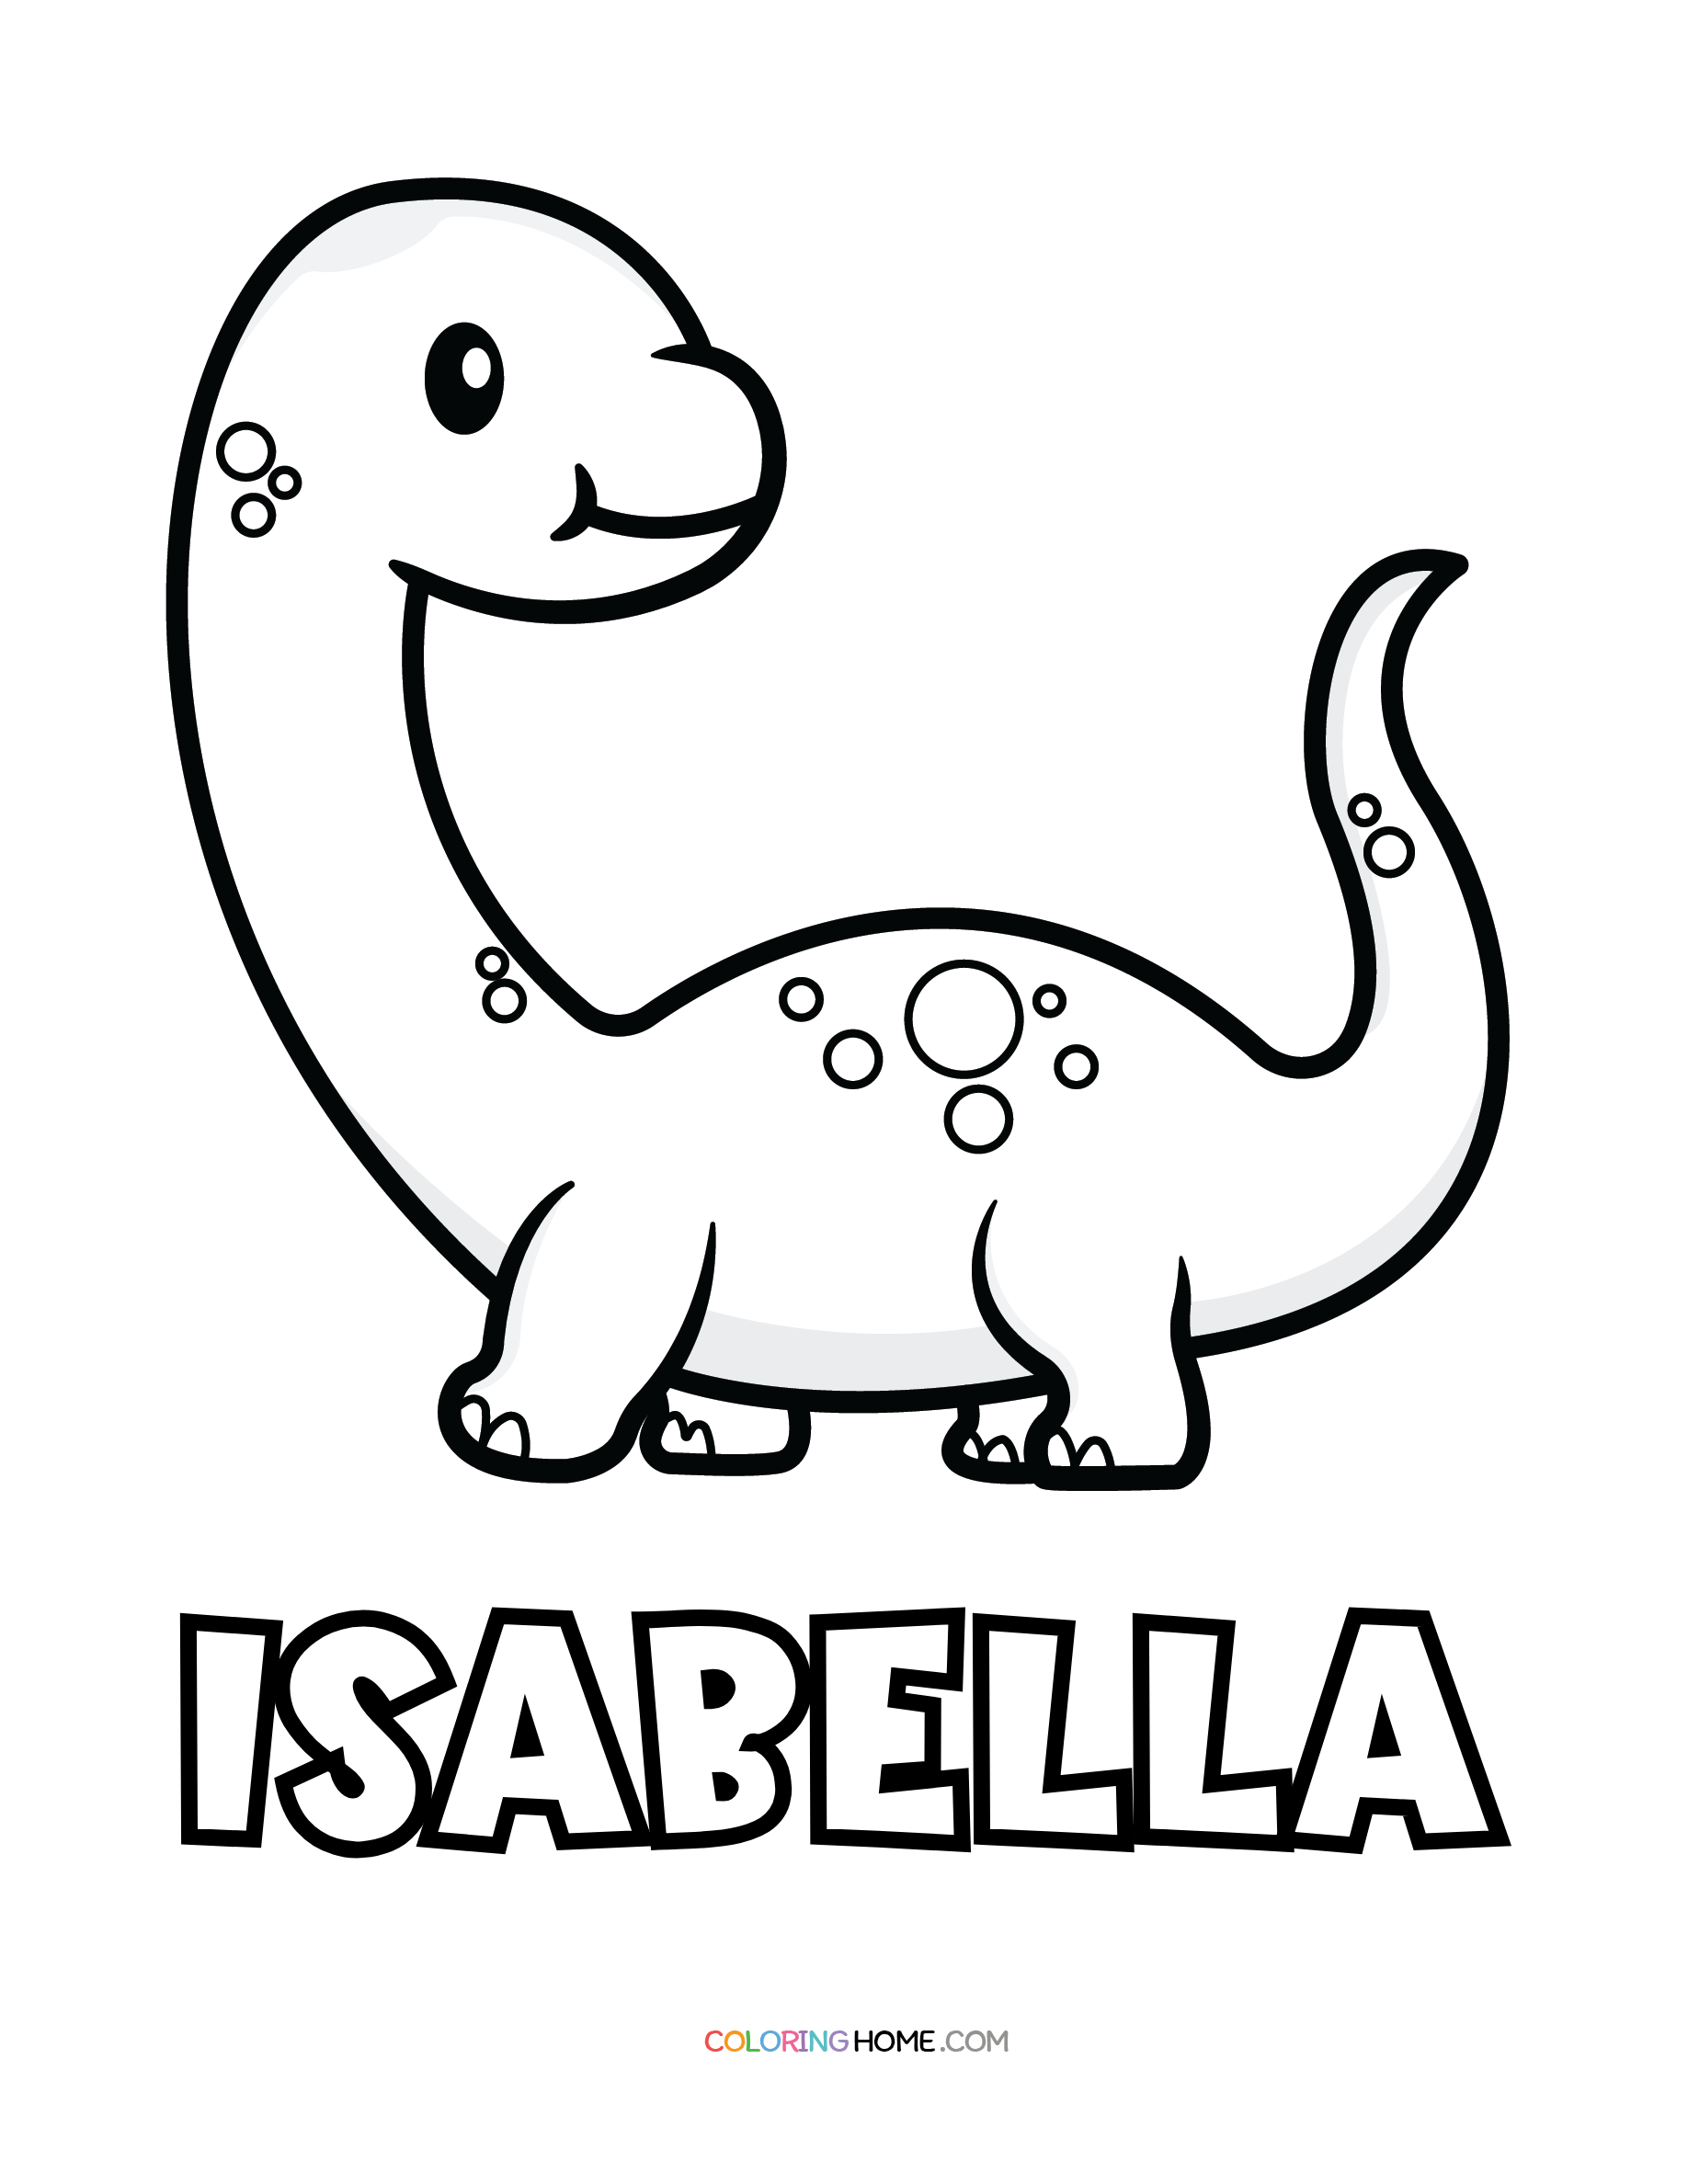 Isabella dinosaur coloring page